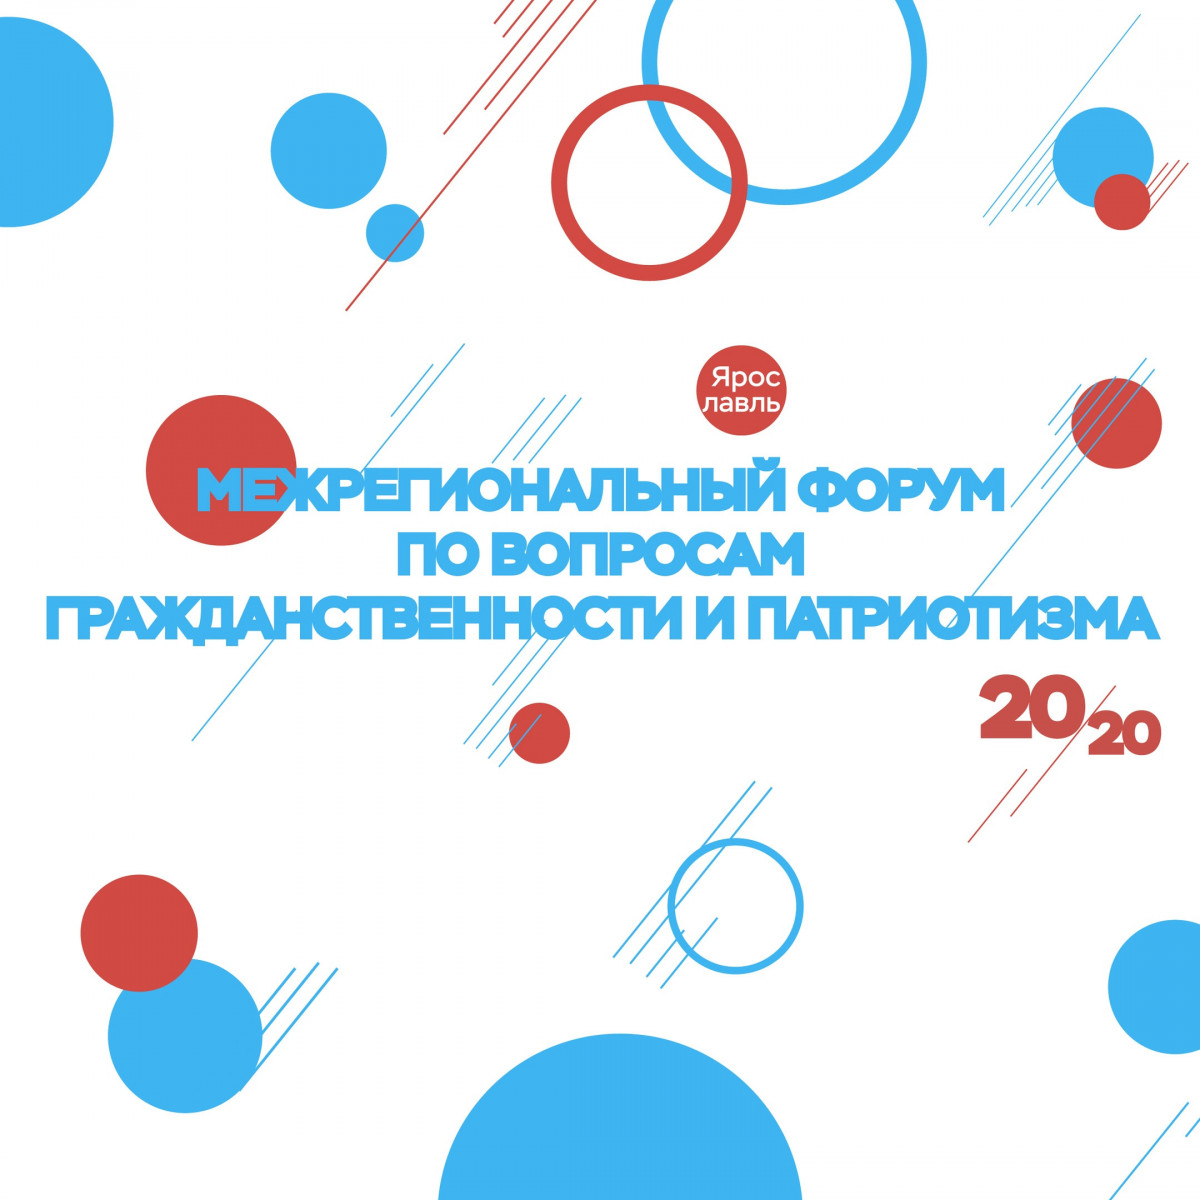 Нижегородцев приглашают обсудить тему патриотизма на межрегиональном форуме